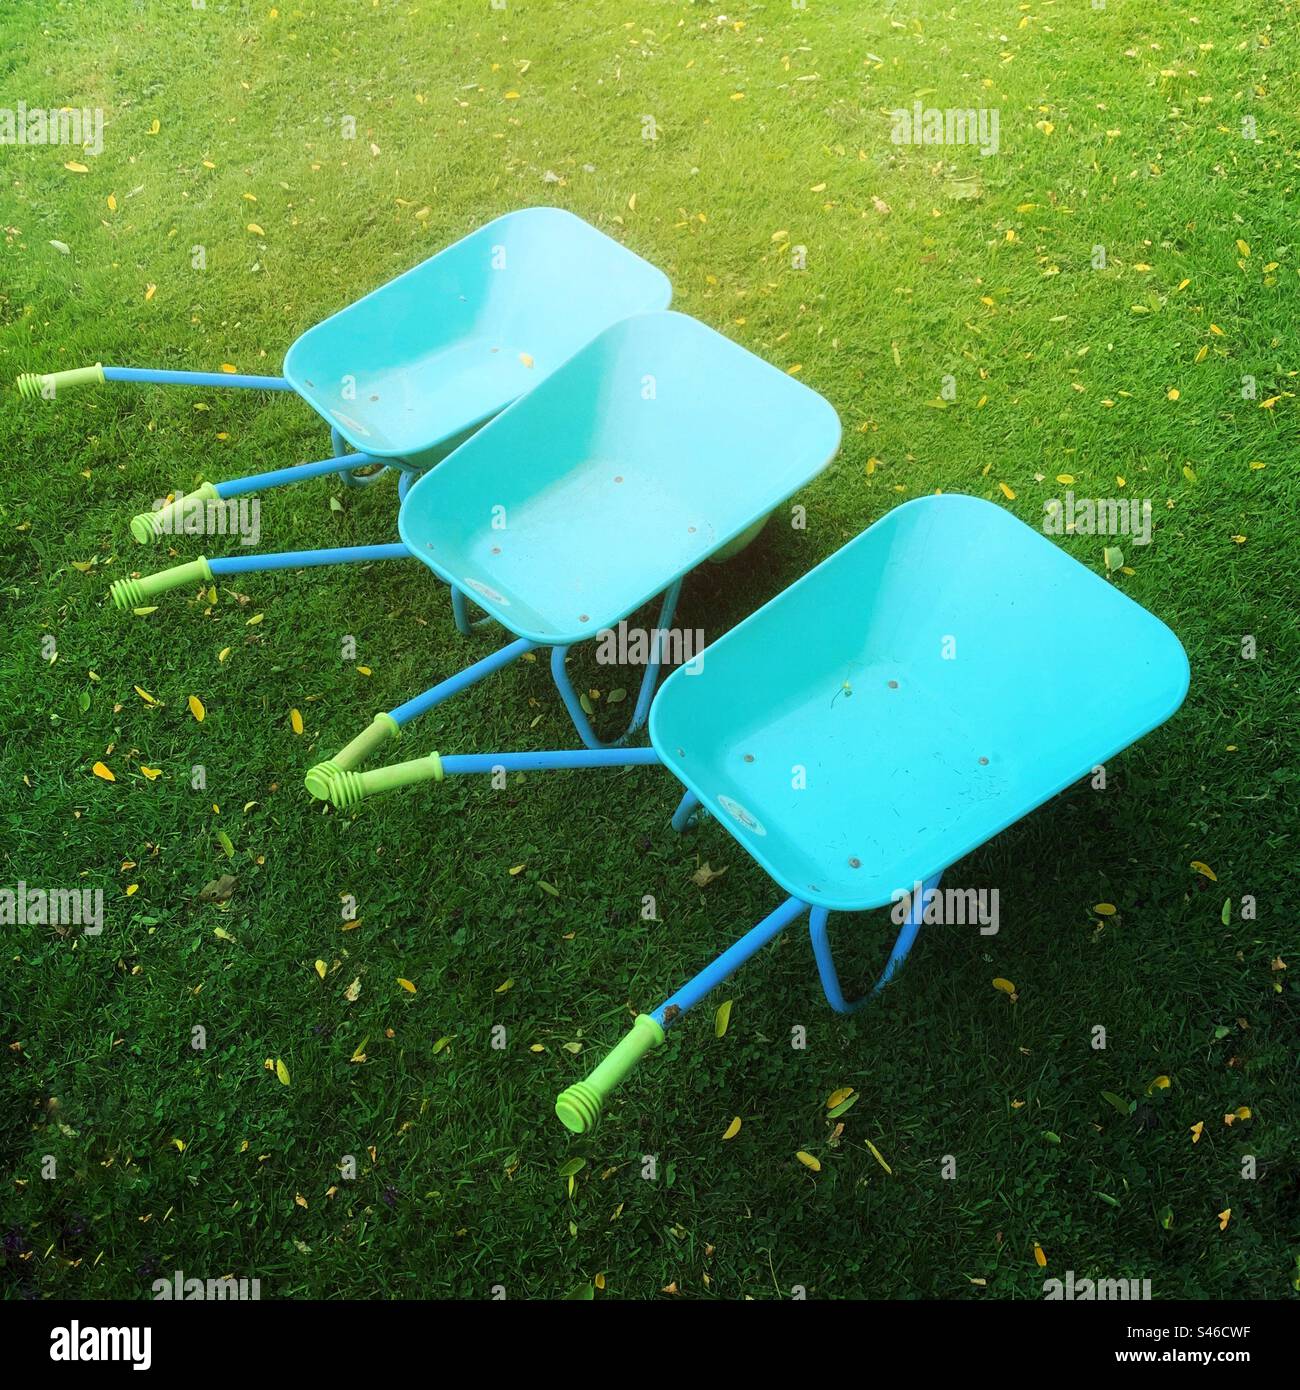 Drei Schubkarren für den Kindergarten auf einem grünen Sommergarten Stockfoto